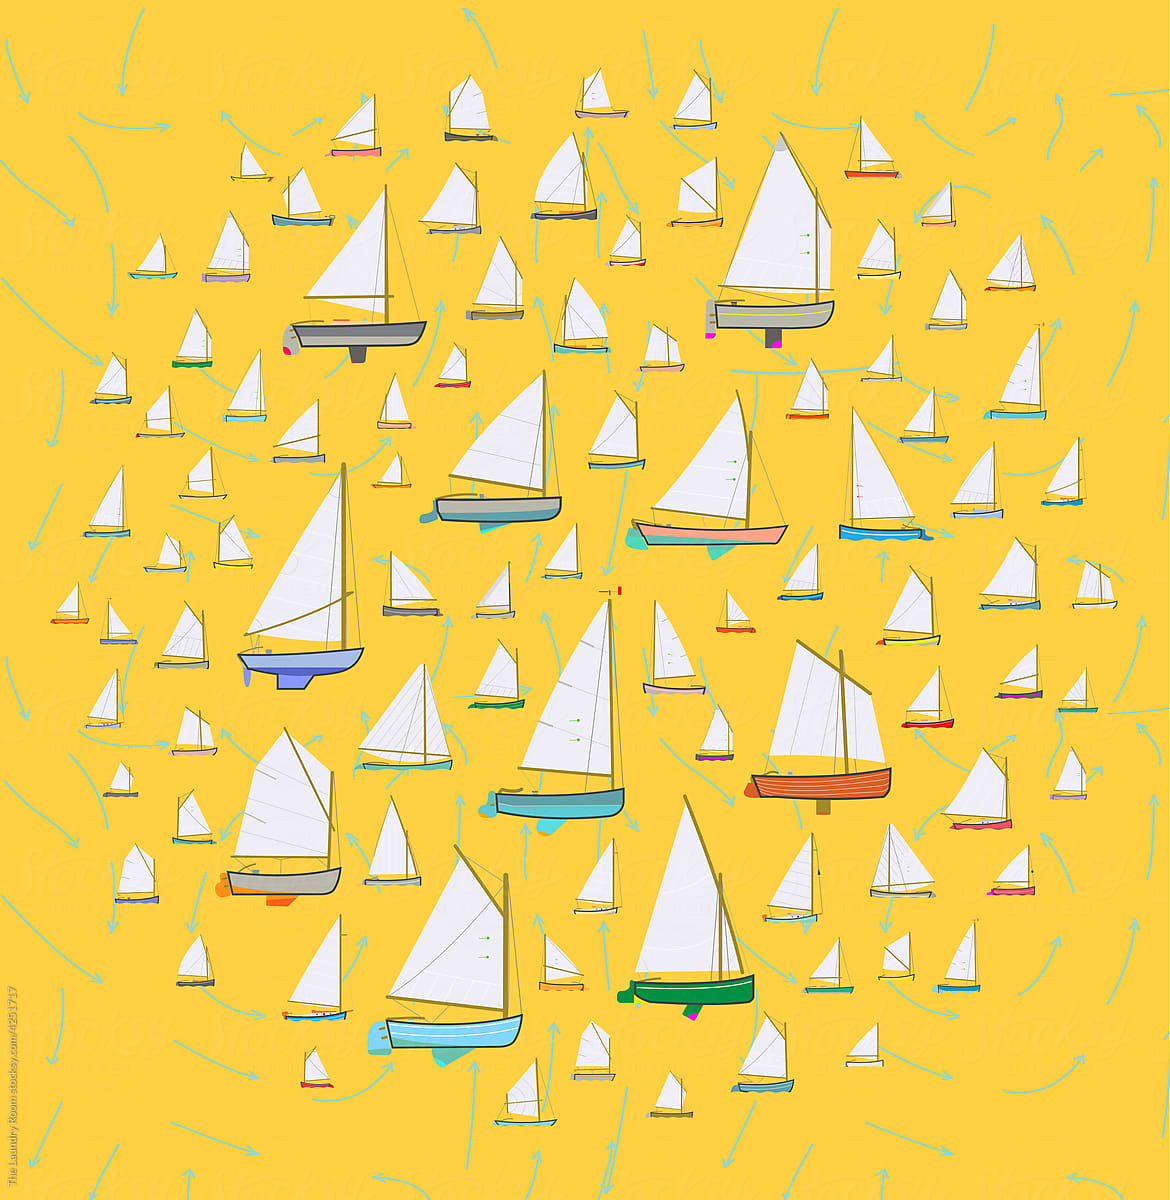 Single Sail Catboat Pattern